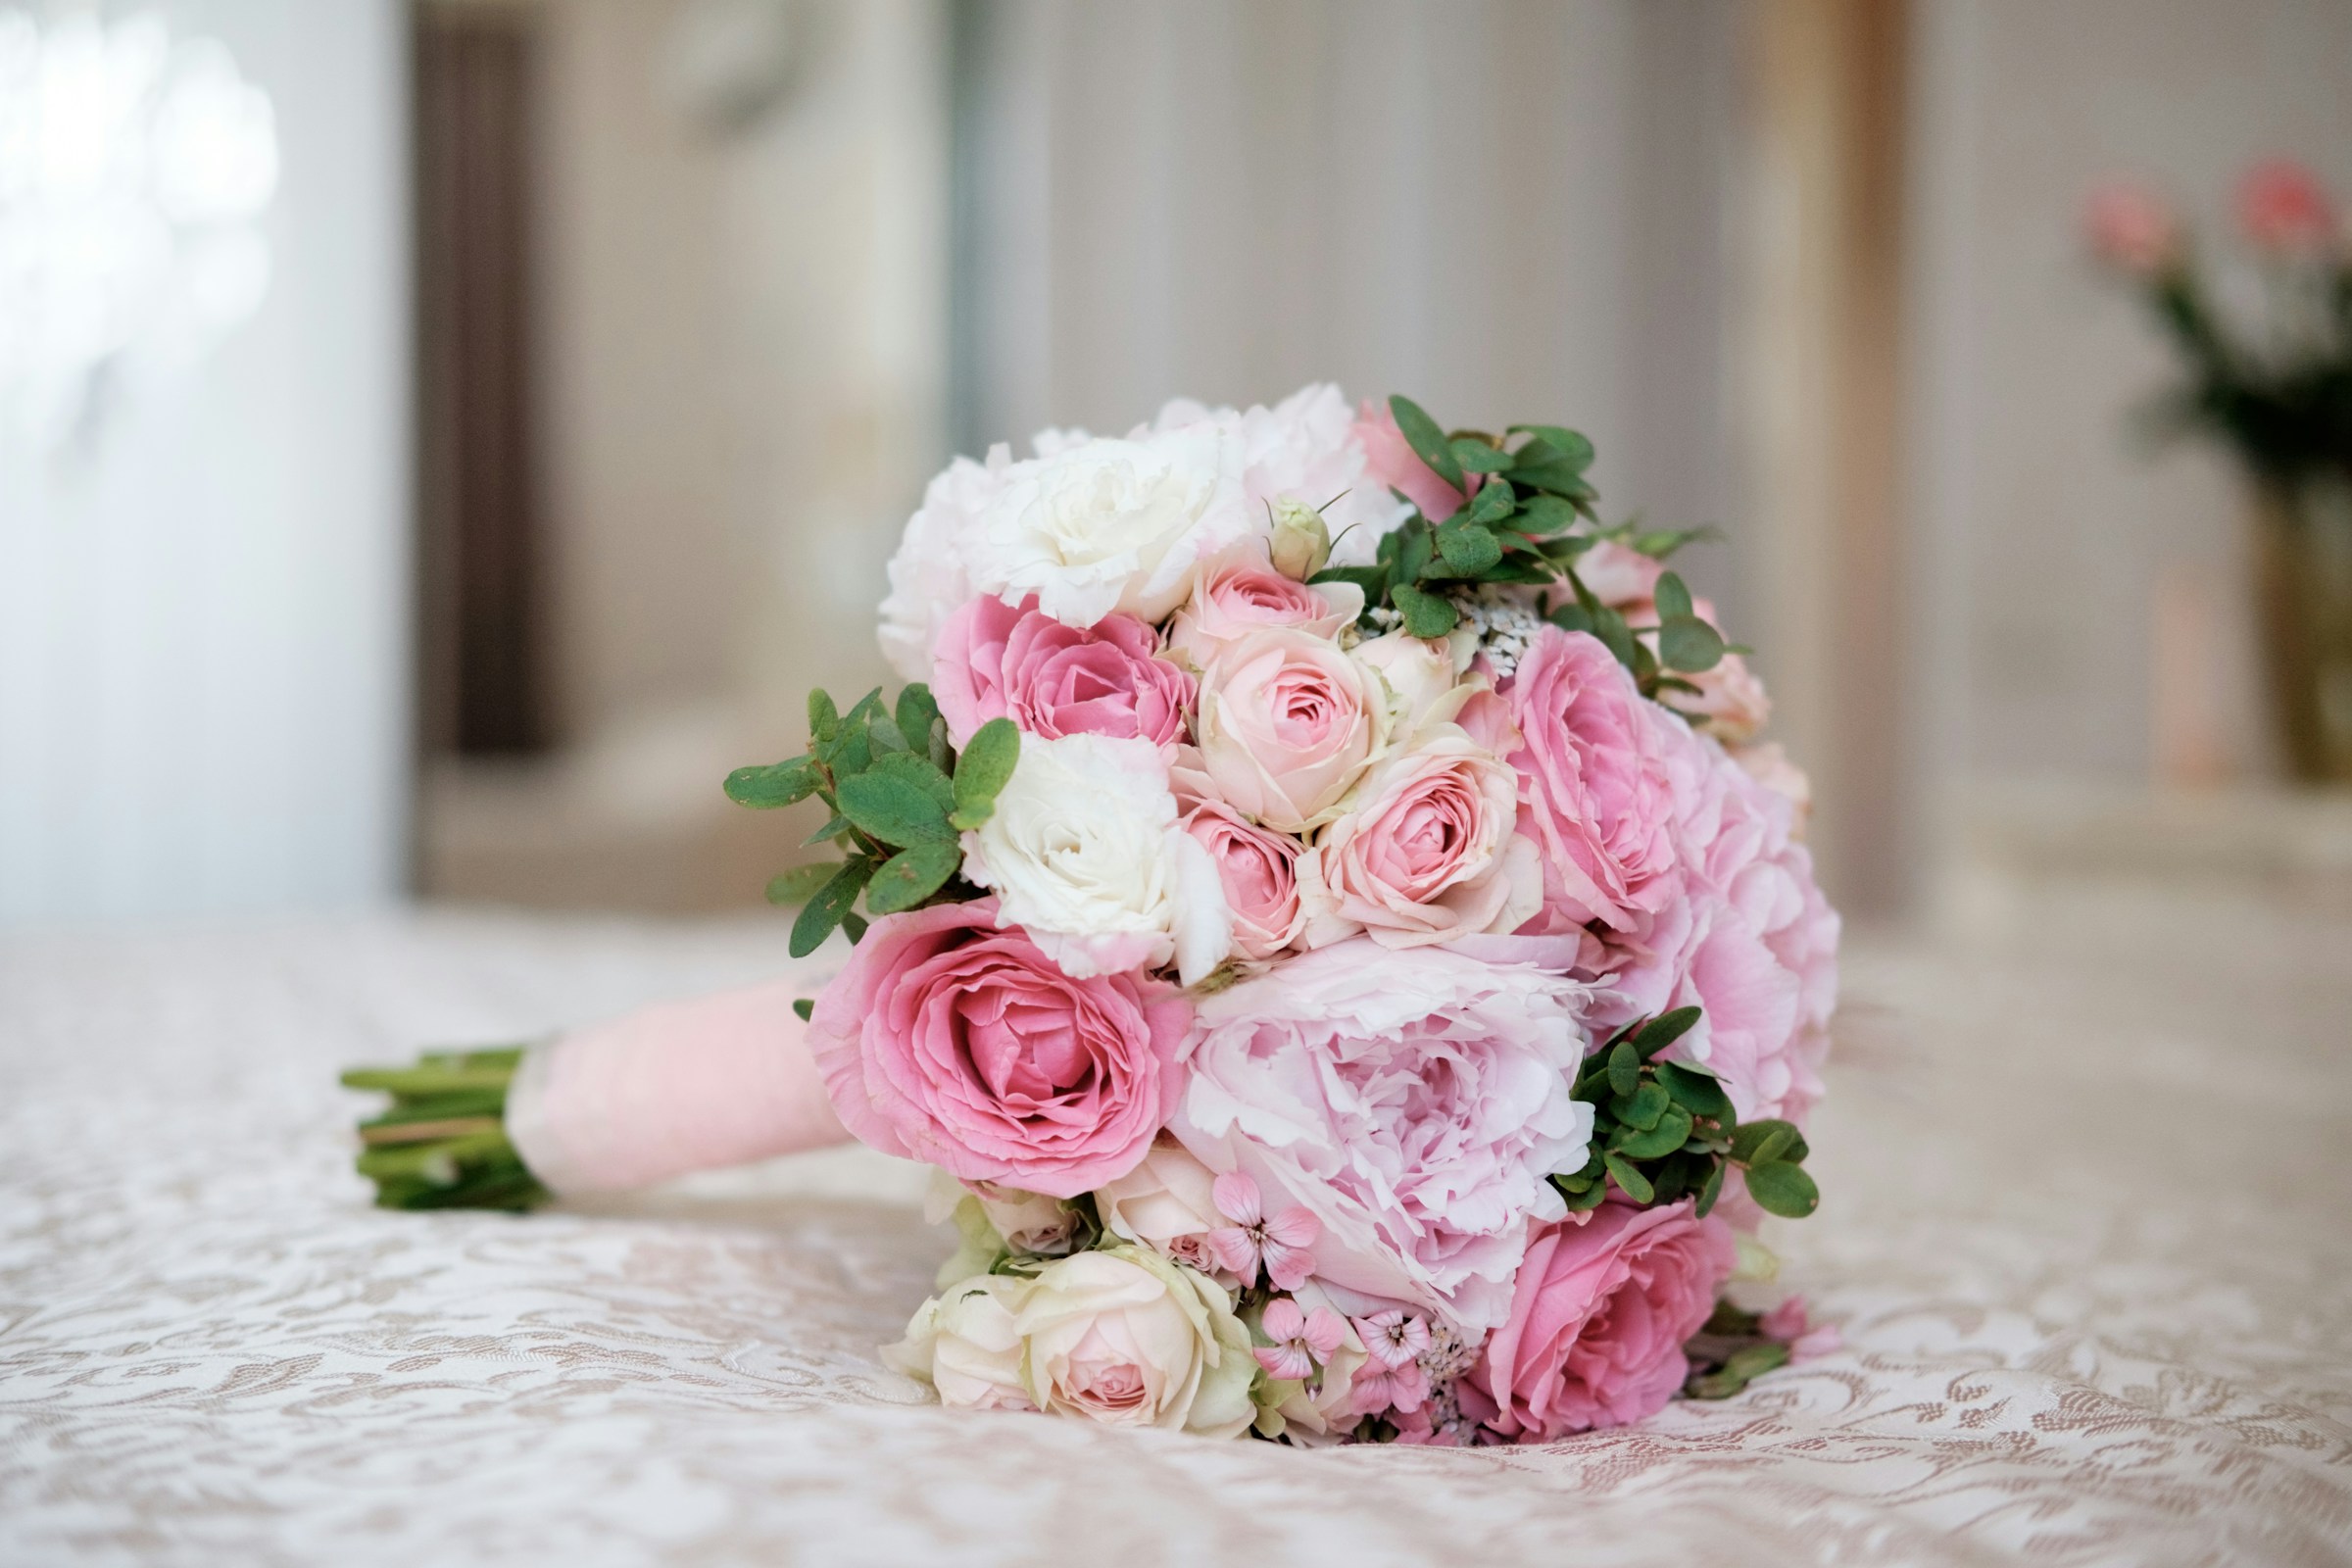 A bridal bouquet | Source: Unsplash